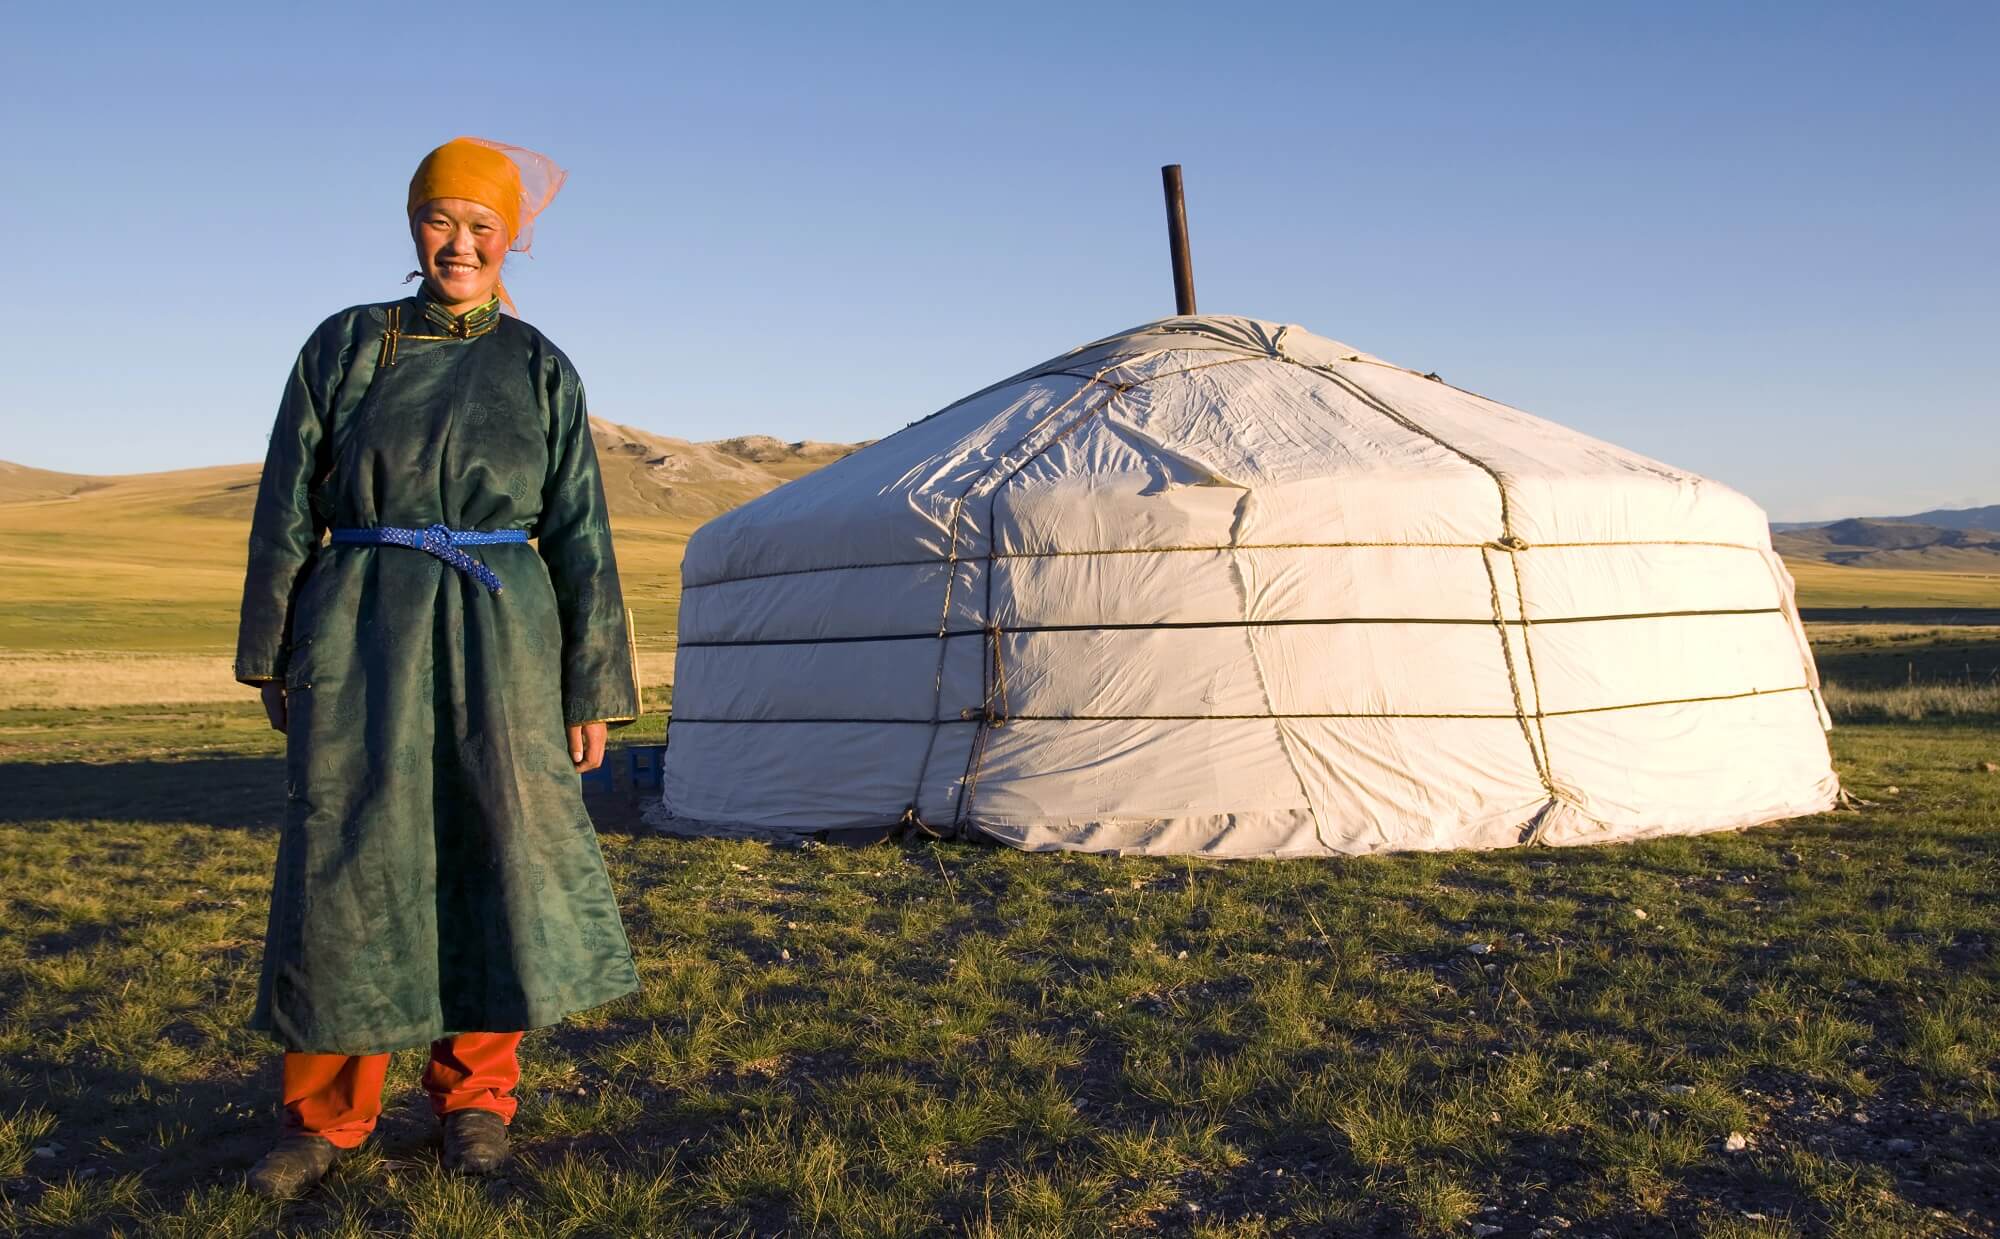 mongolian deel worn by women